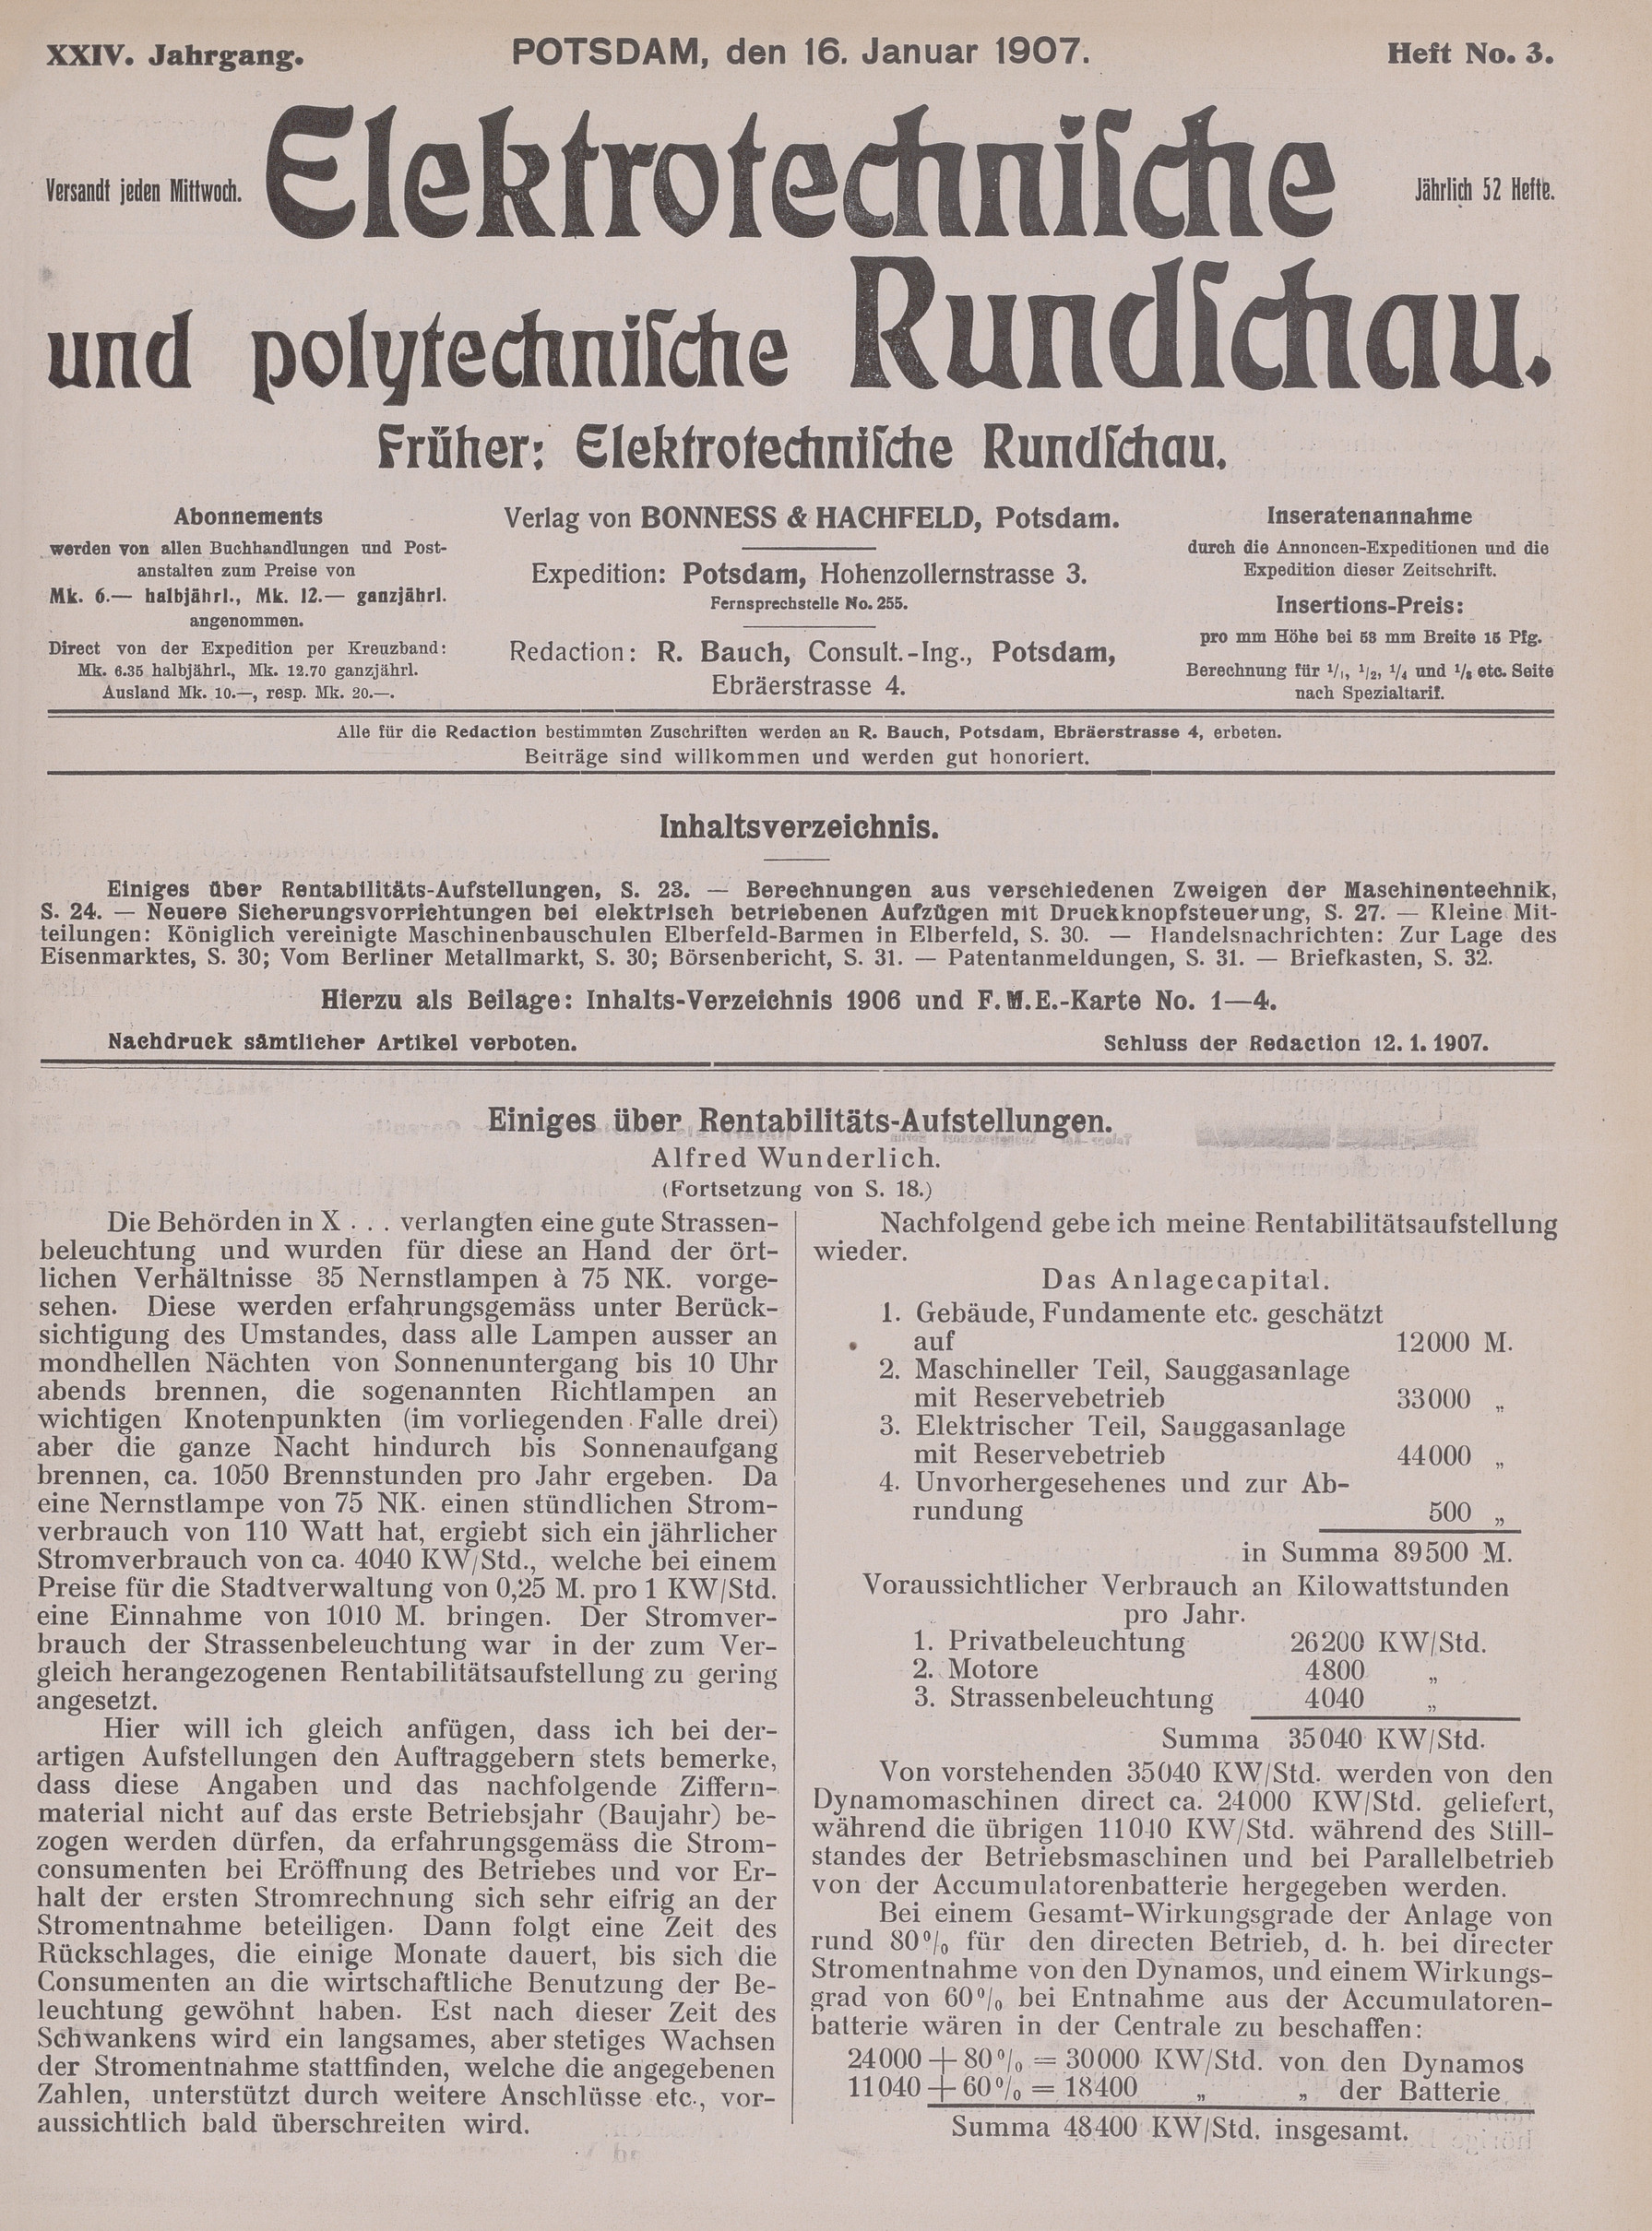 Elektrotechnische und polytechnische Rundschau, XXIV. Jahrgang, Heft No. 3